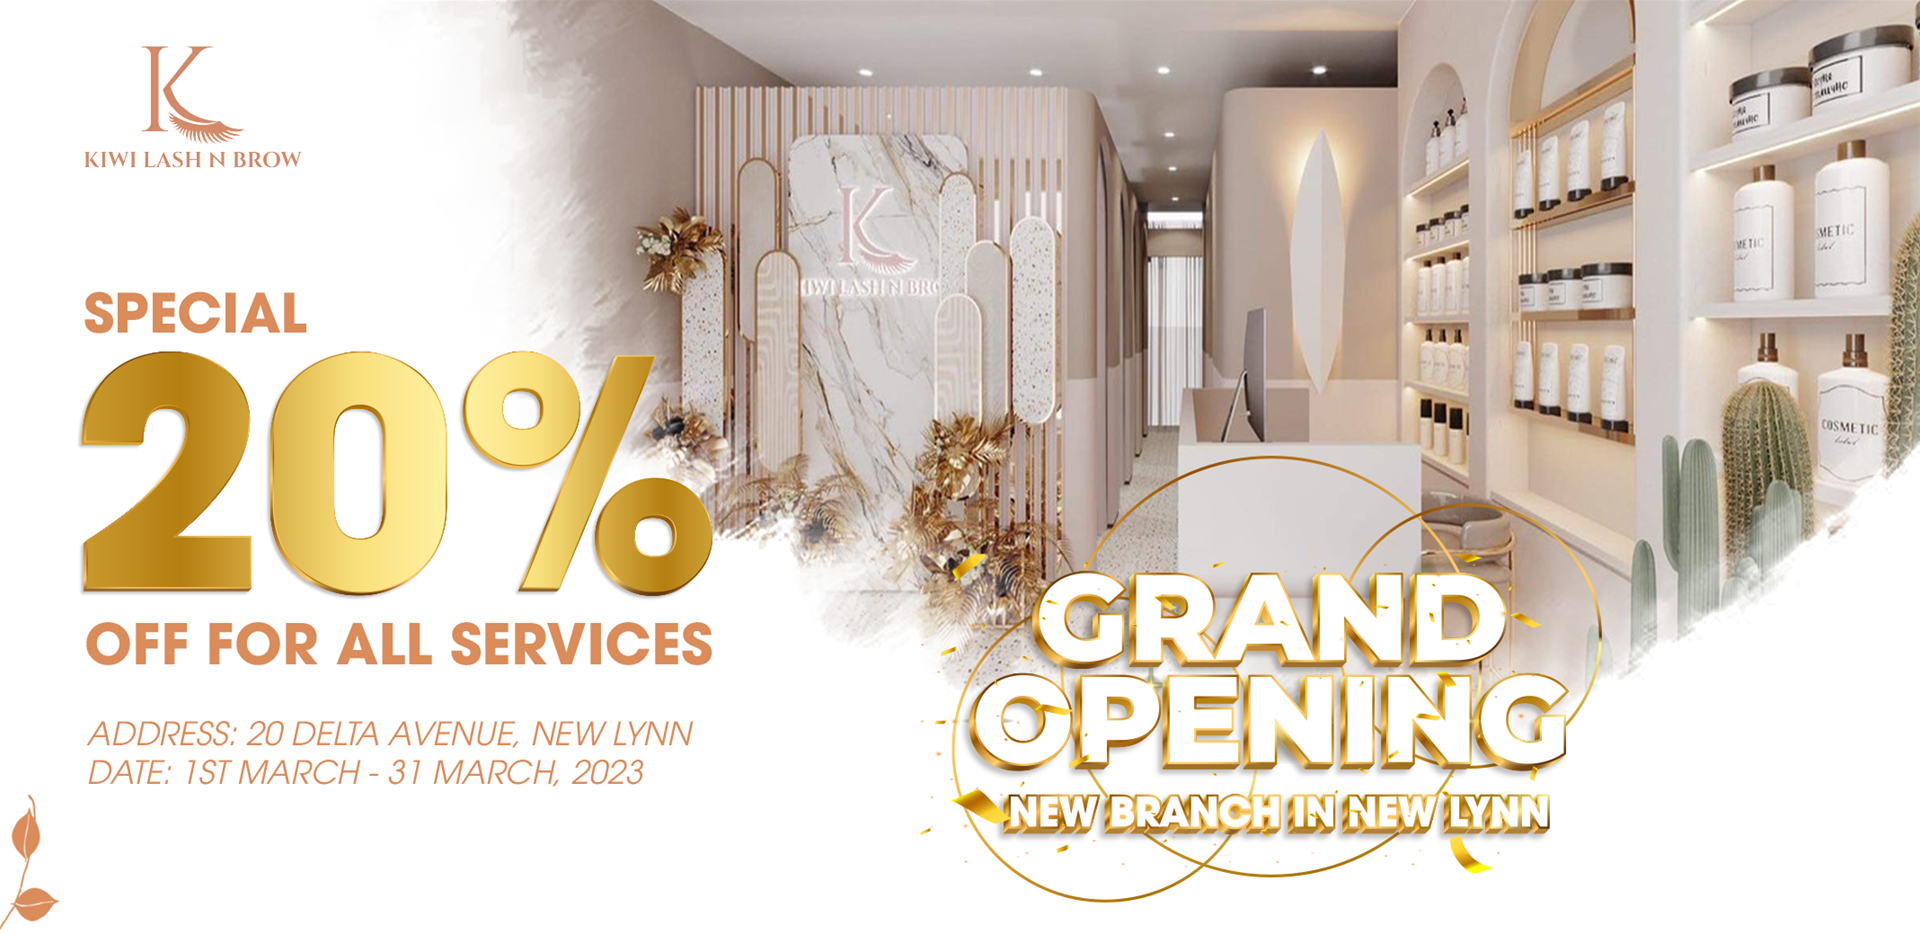 Grand Opening New Branch in New Lynn